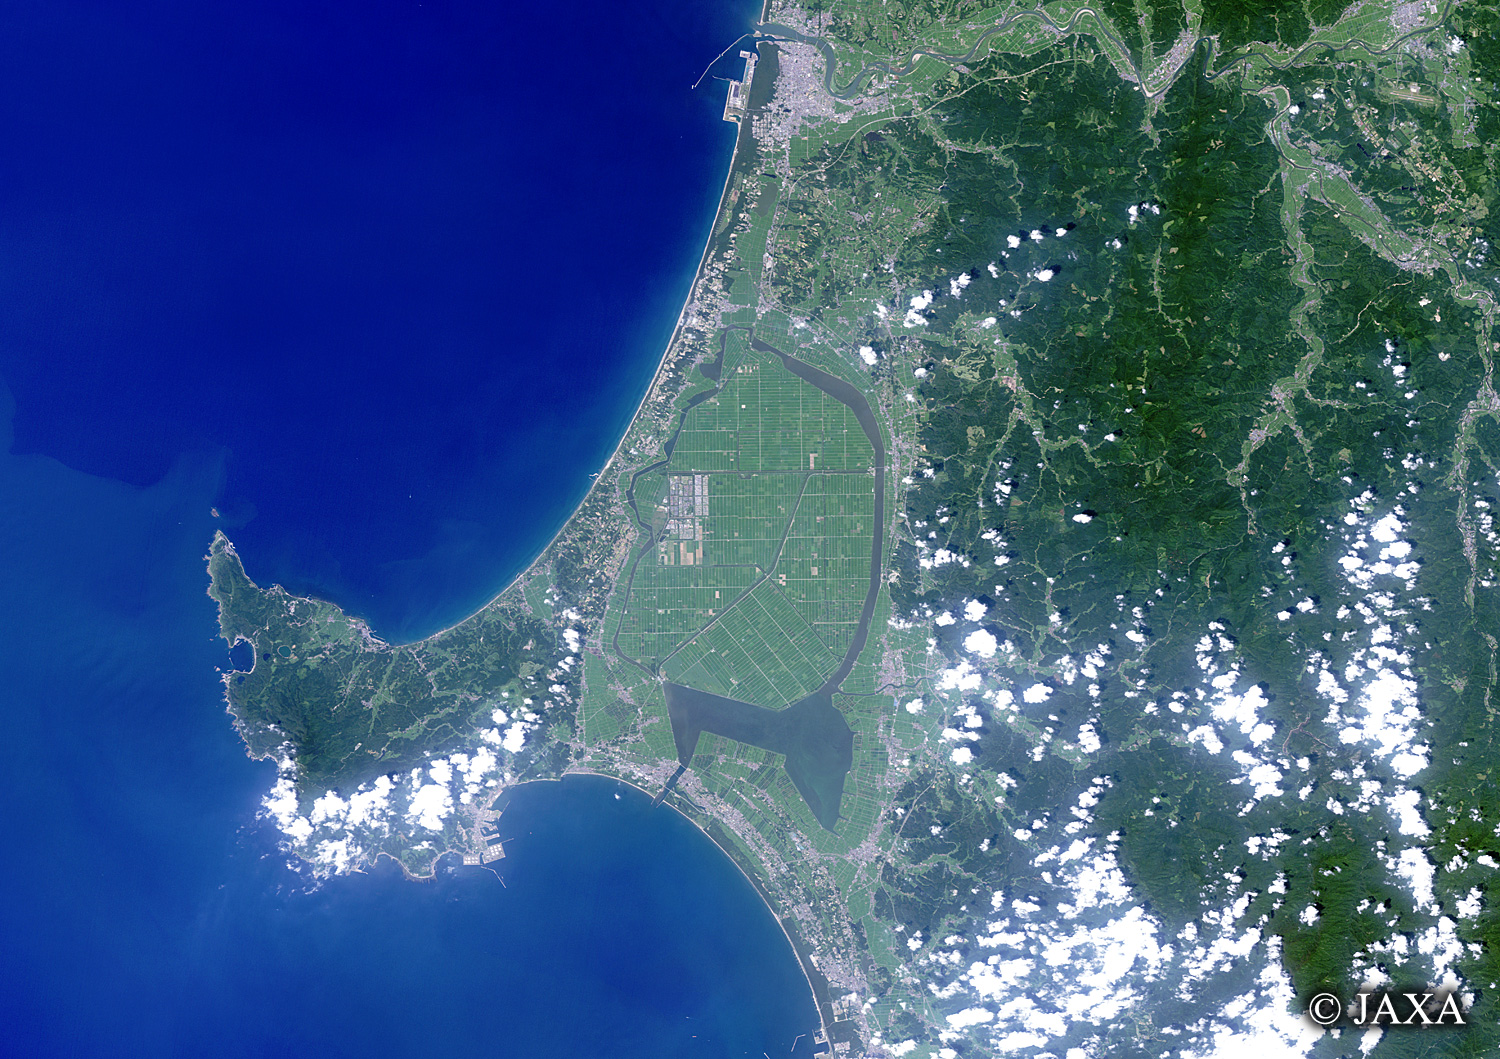 だいちから見た日本の都市 男鹿半島と八郎潟:衛星画像